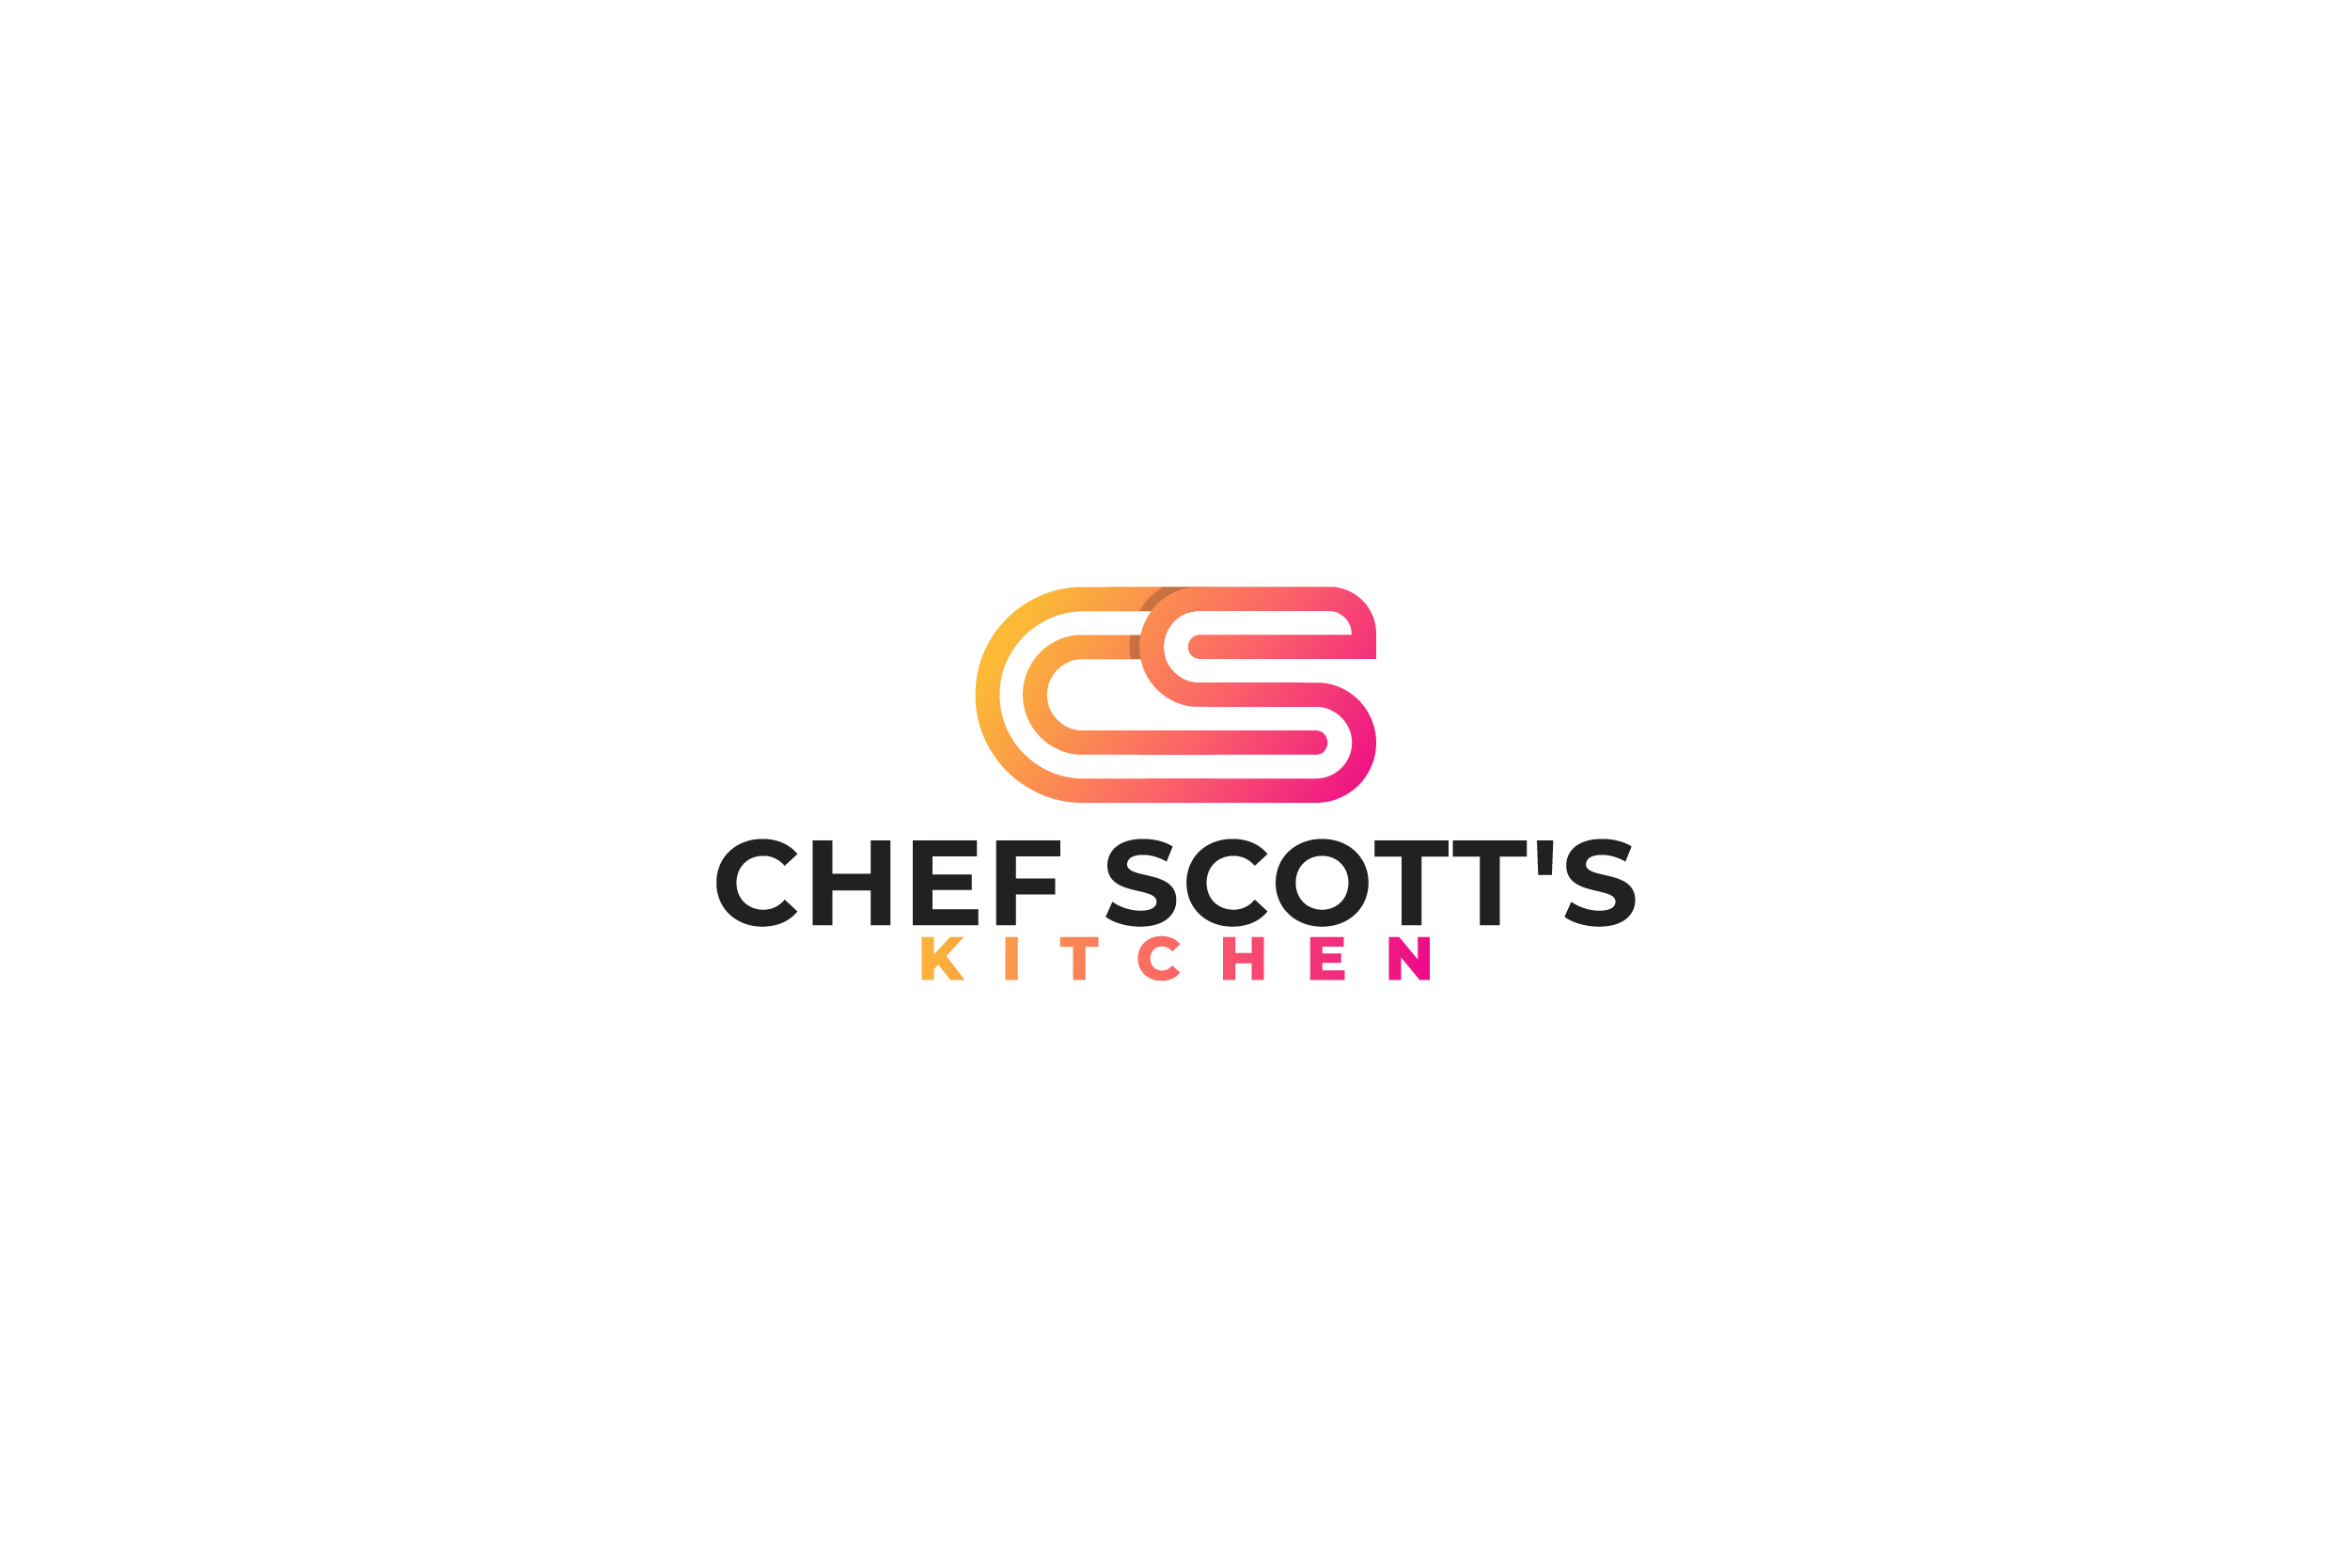 Chef Scott's kitchen